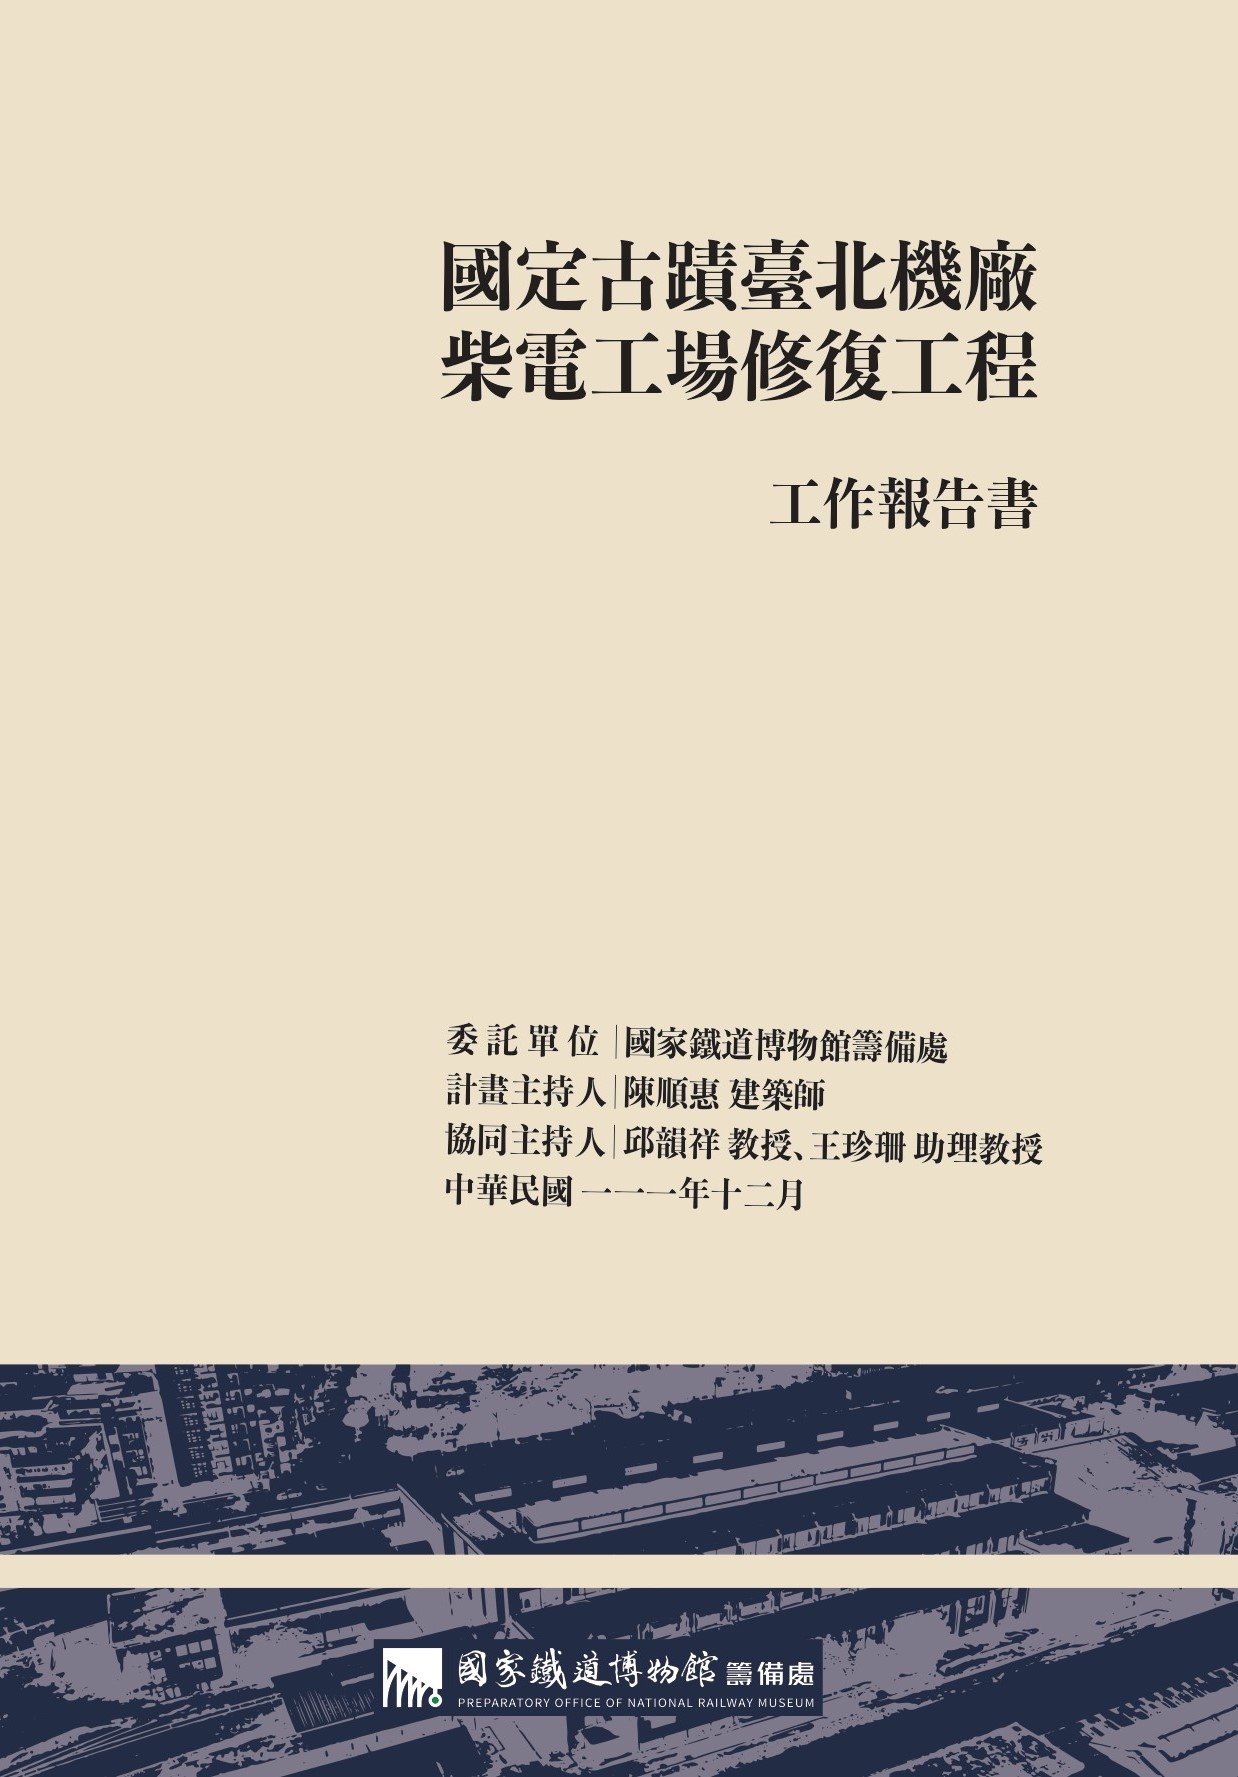 國定古蹟臺北機廠柴電工場修復工程工作報告書